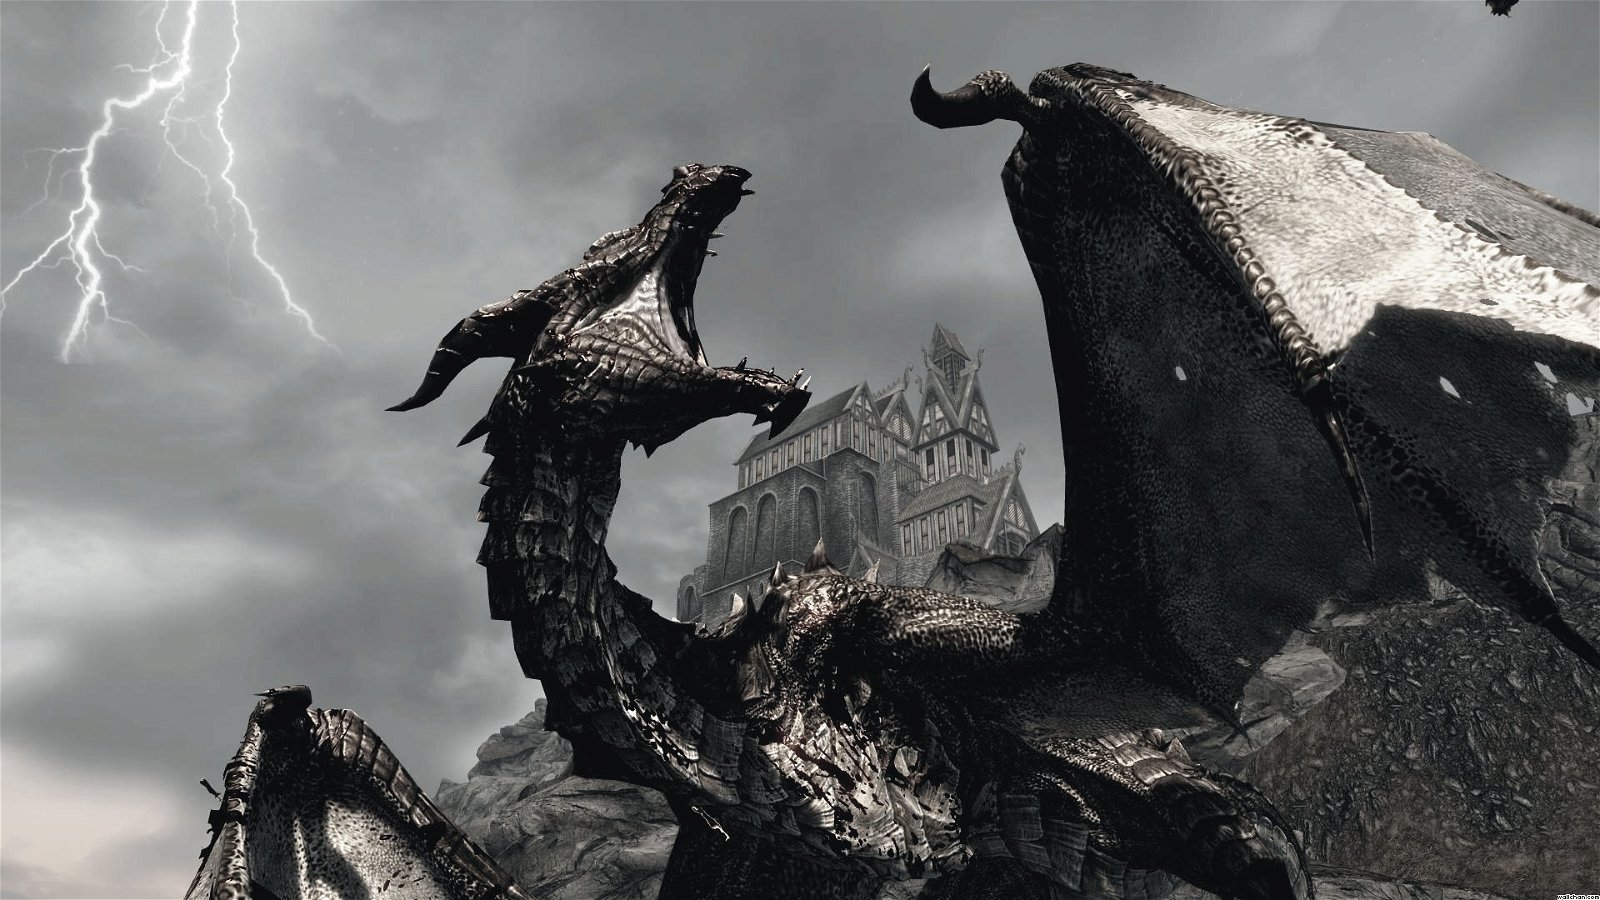 Reportaje: Los mejores videojuegos de dragones